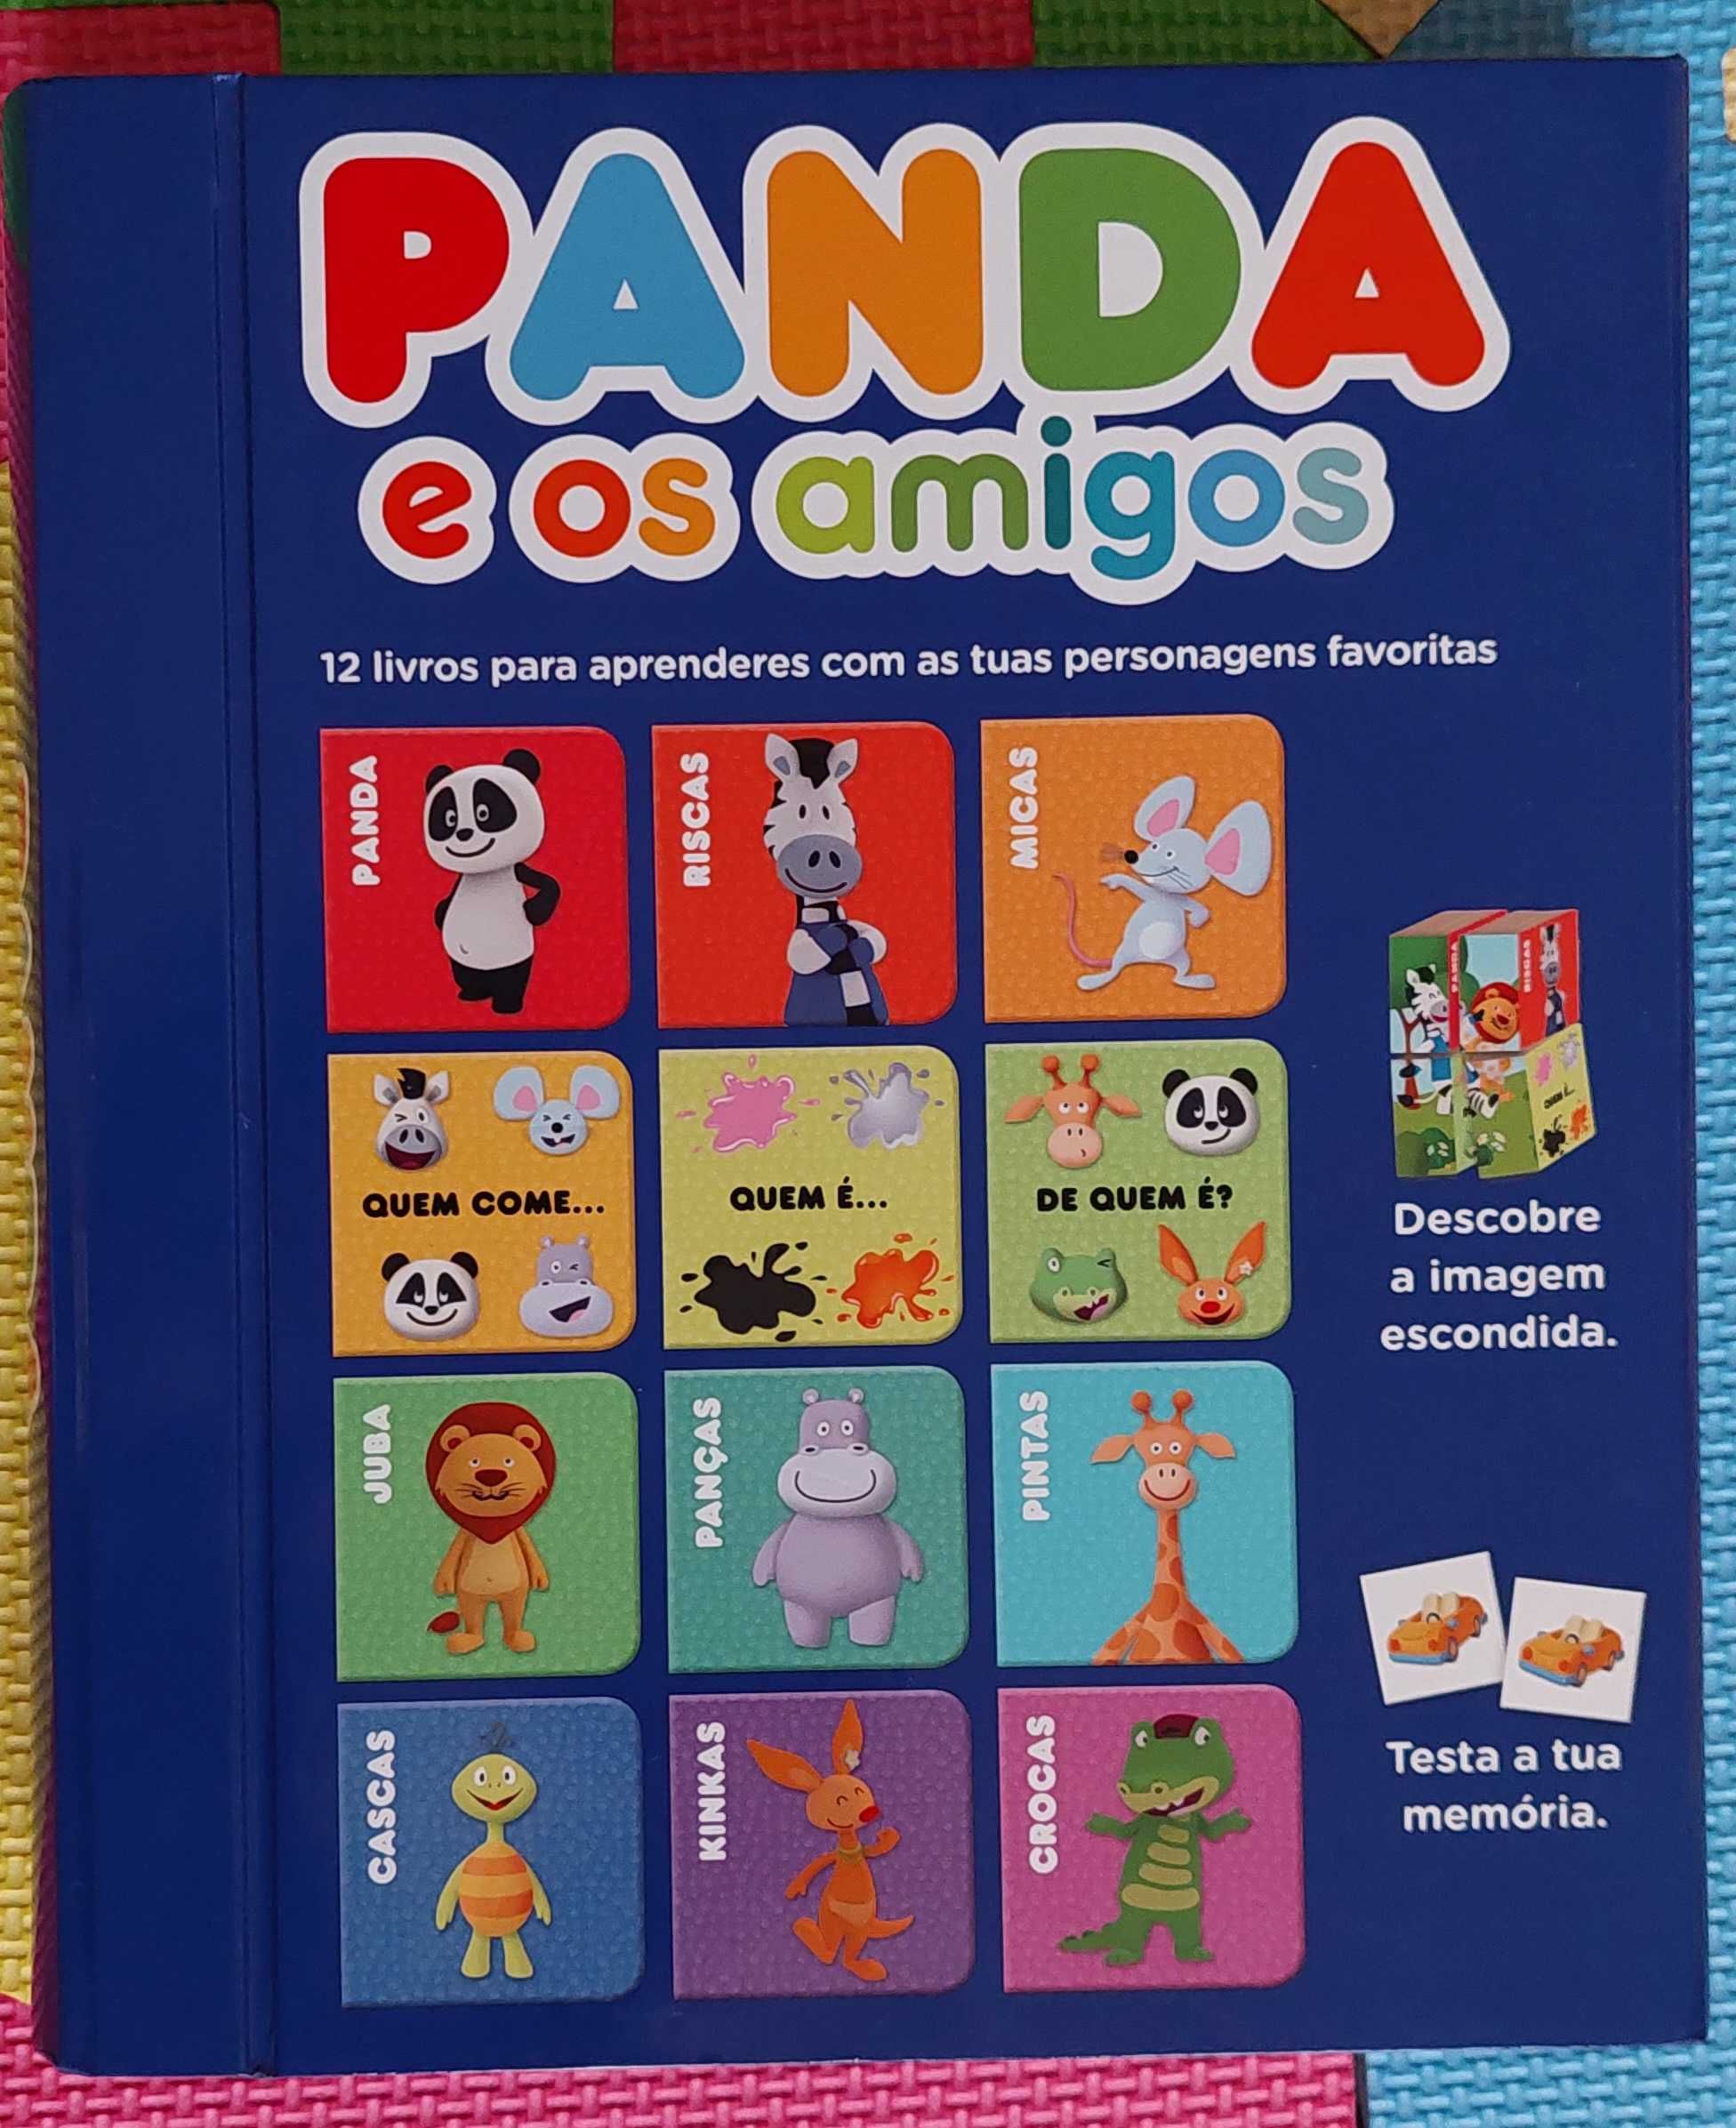 Panda e Os Amigos caixa de livros